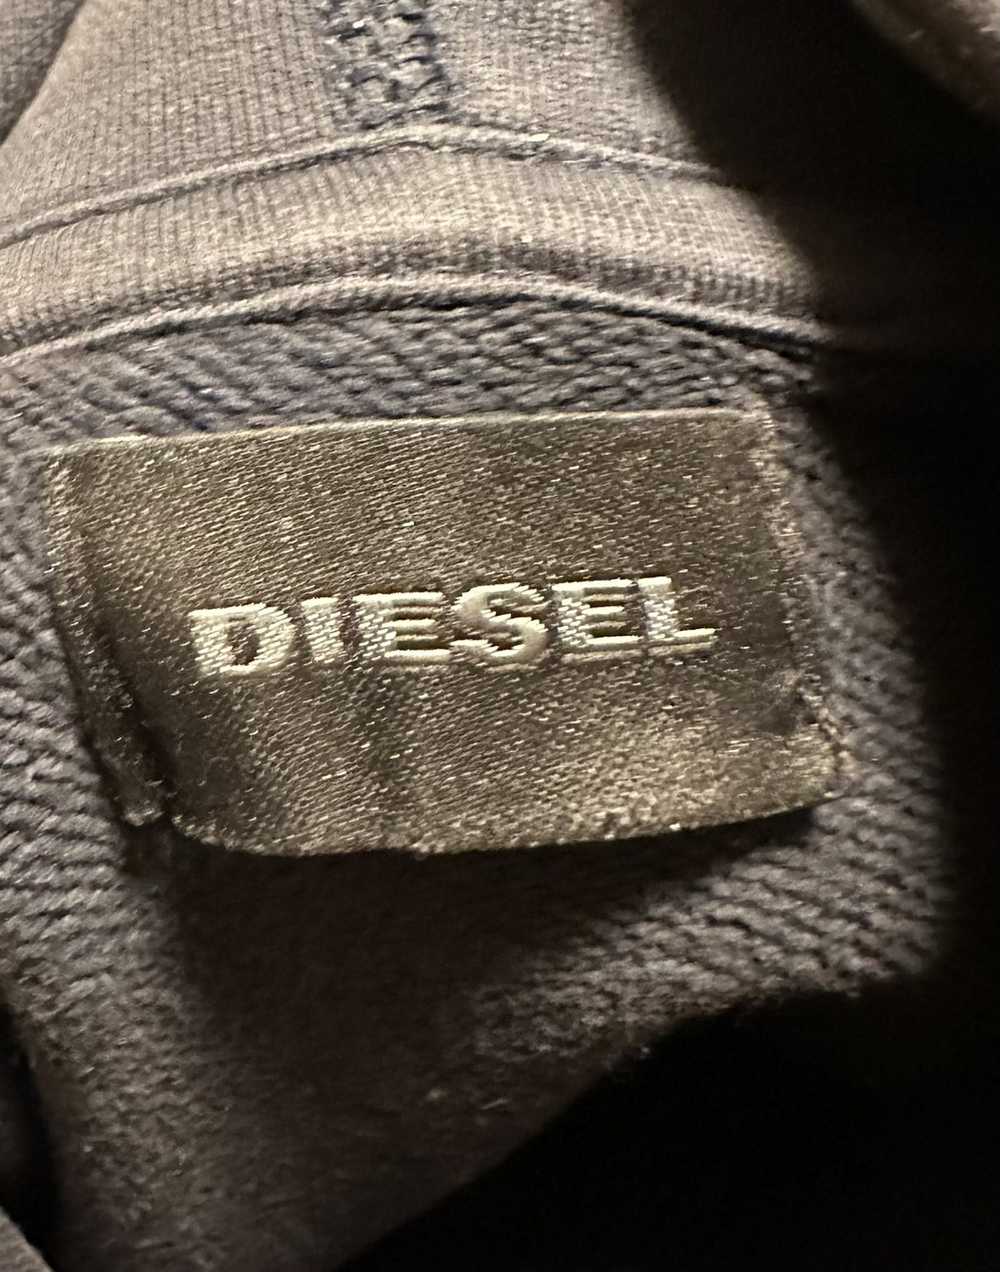 Diesel Diesel ‘Only the Brave’ Hoodie - image 4